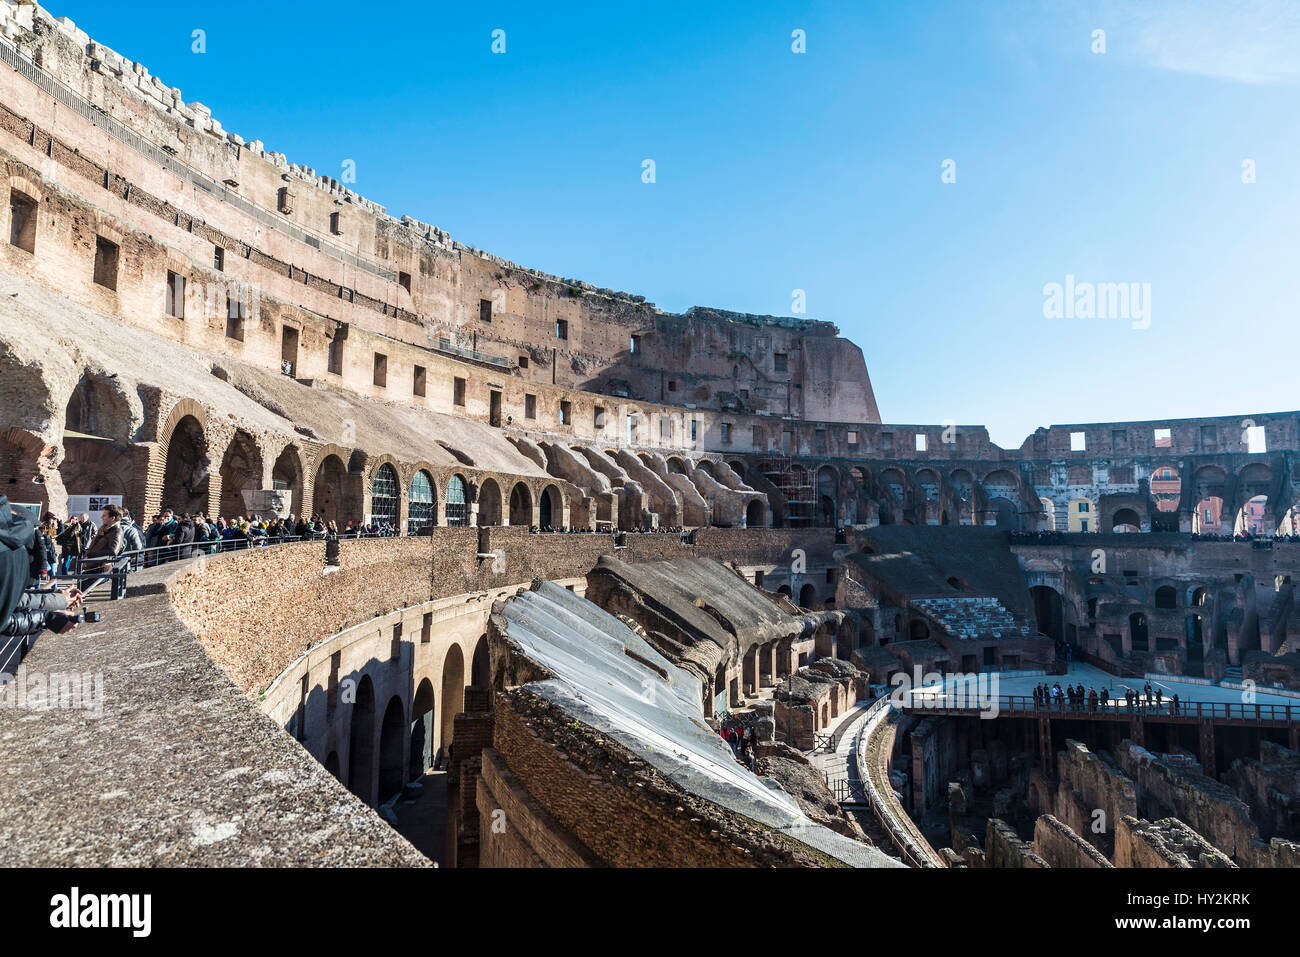 Roma, Italia - 31 dicembre 2016: vista del Colosseo di Roma piena di turisti in Italia Foto Stock